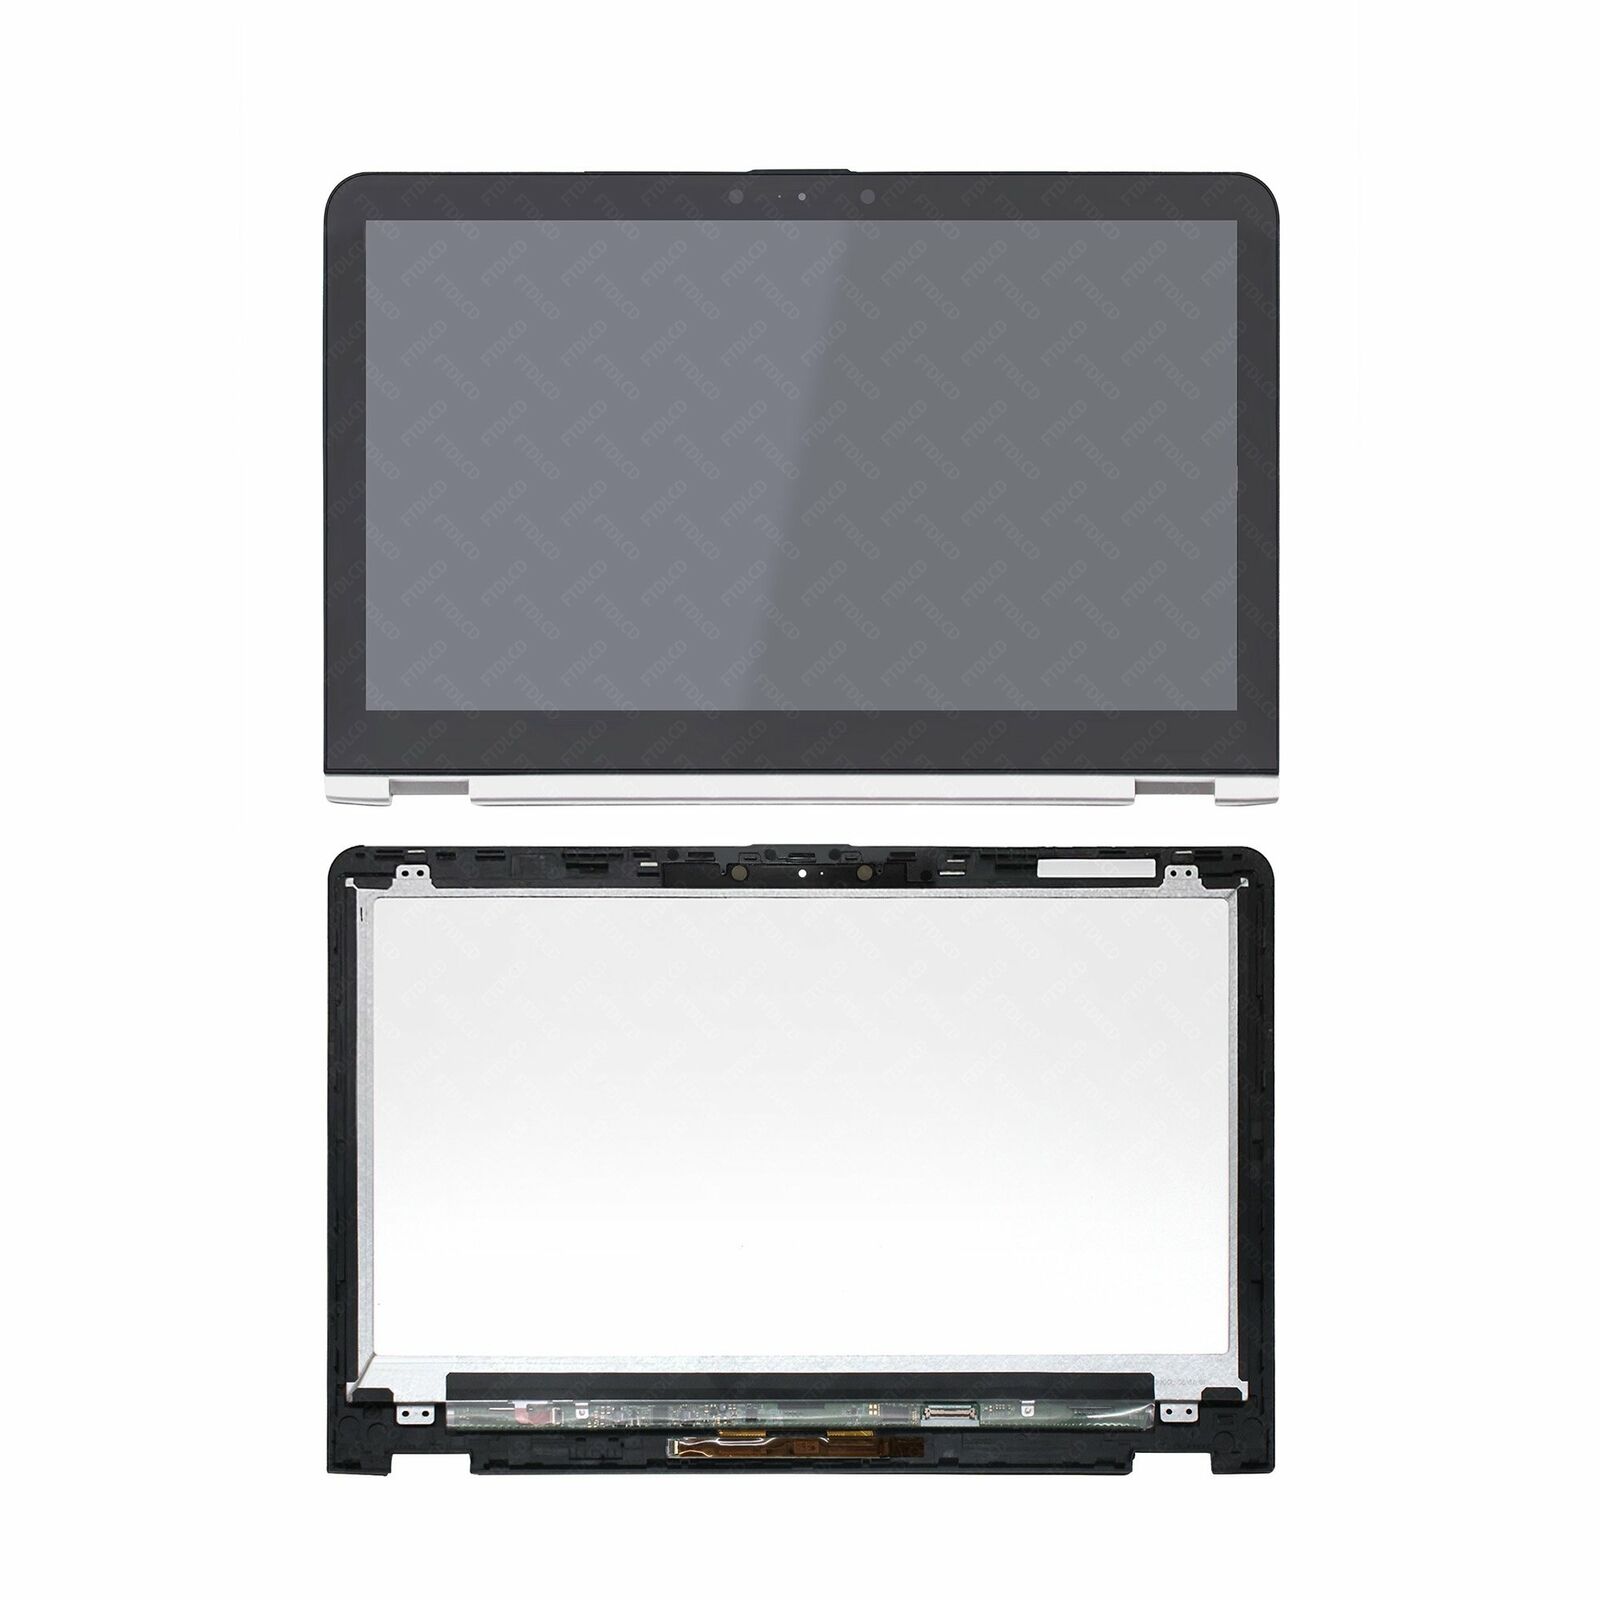 N156HCE-EBA LCD Touchscreen Display+Bezel for HP ENVY x360 m6-aq005dx 856811-001